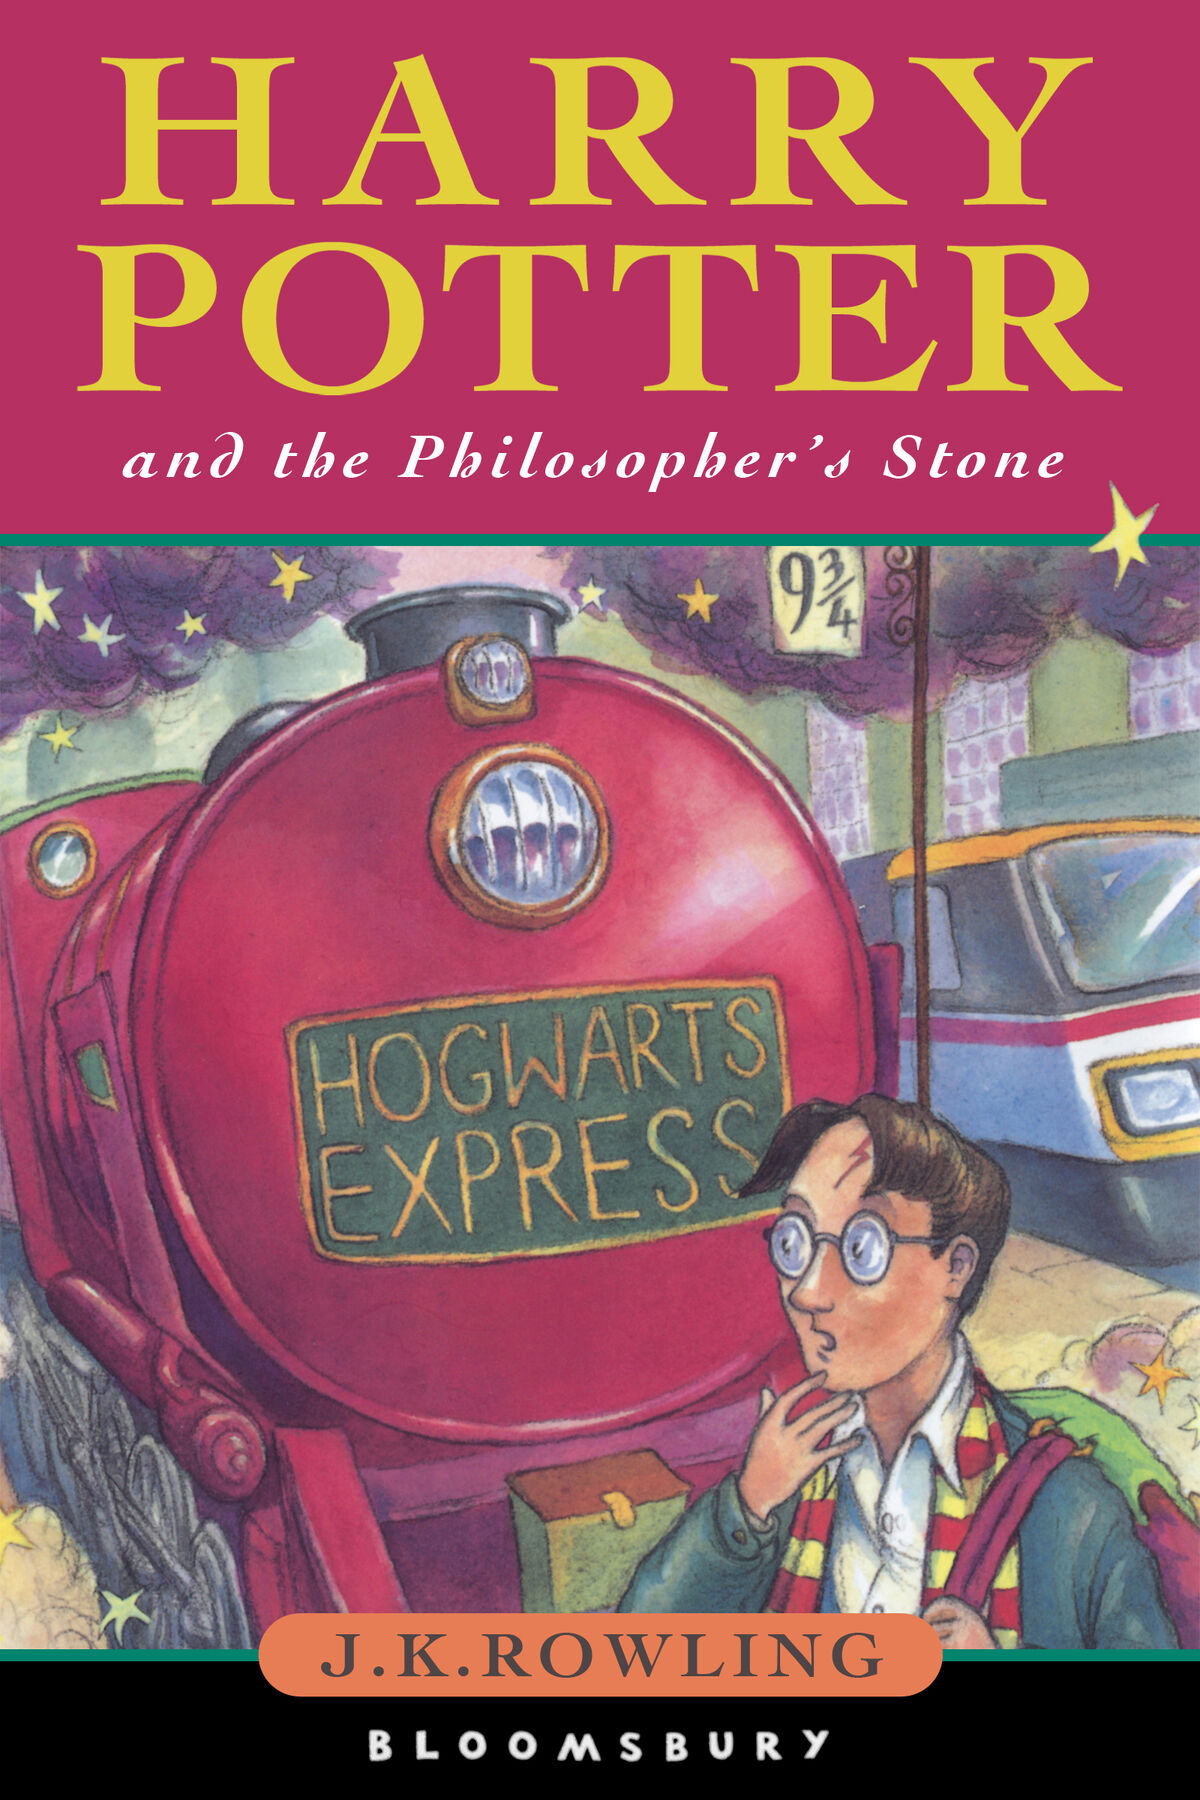 Harry Potter là tên nhân vật nổi tiếng trong loạt phim và tiểu thuyết cùng tên, thu hút hàng triệu người hâm mộ trên khắp thế giới. Hãy xem hình ảnh liên quan đến Harry Potter để trải nghiệm lại những khoảnh khắc đầy cảm xúc của câu chuyện này.